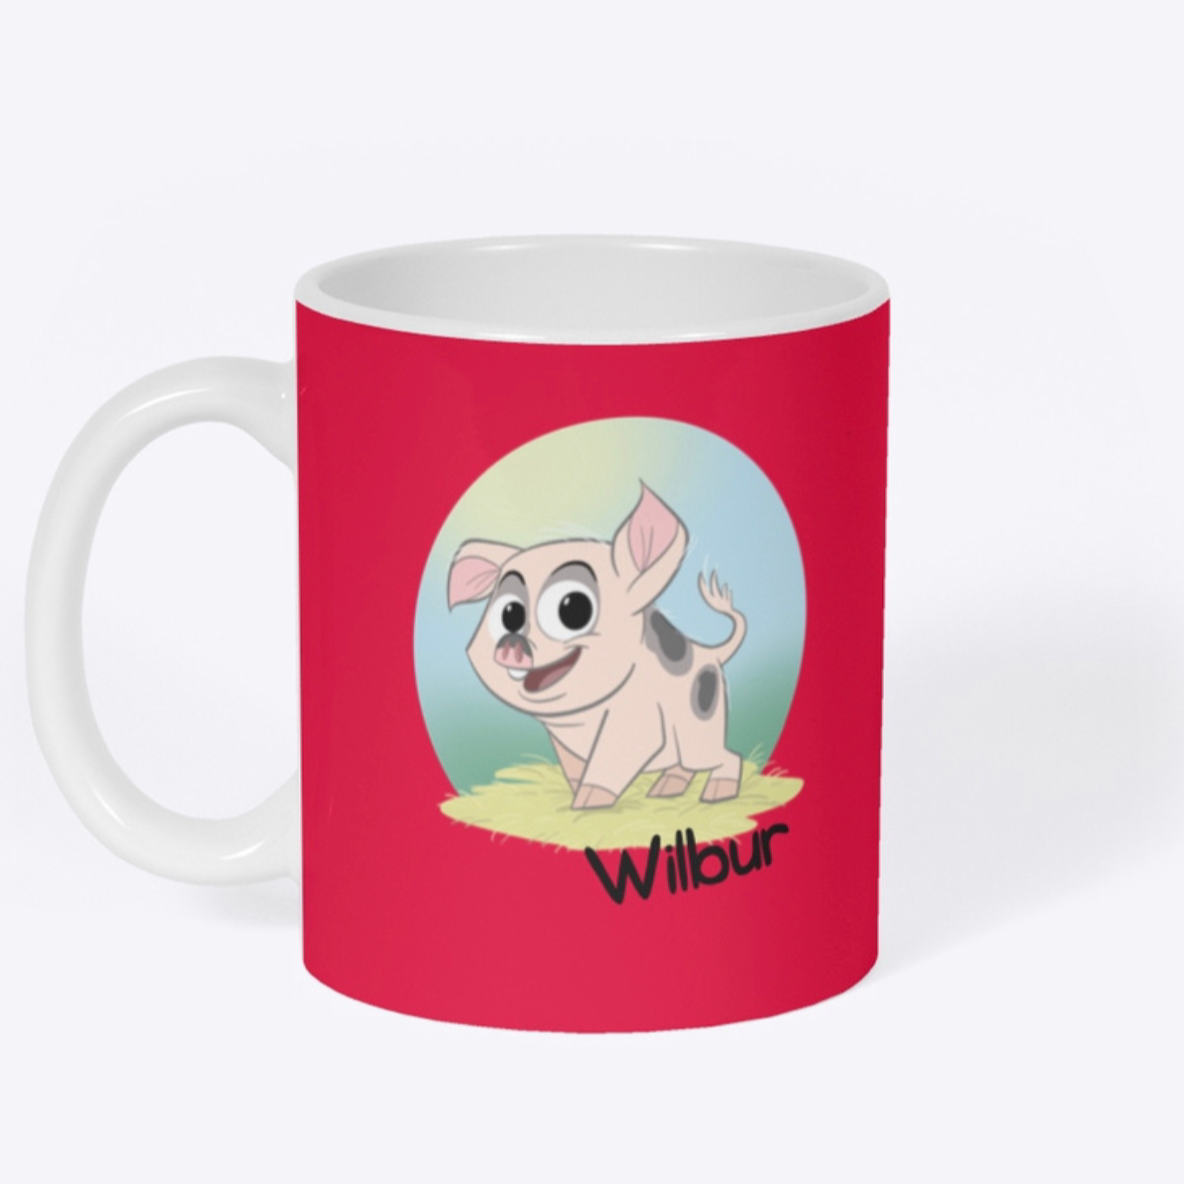 Wilbur Mug